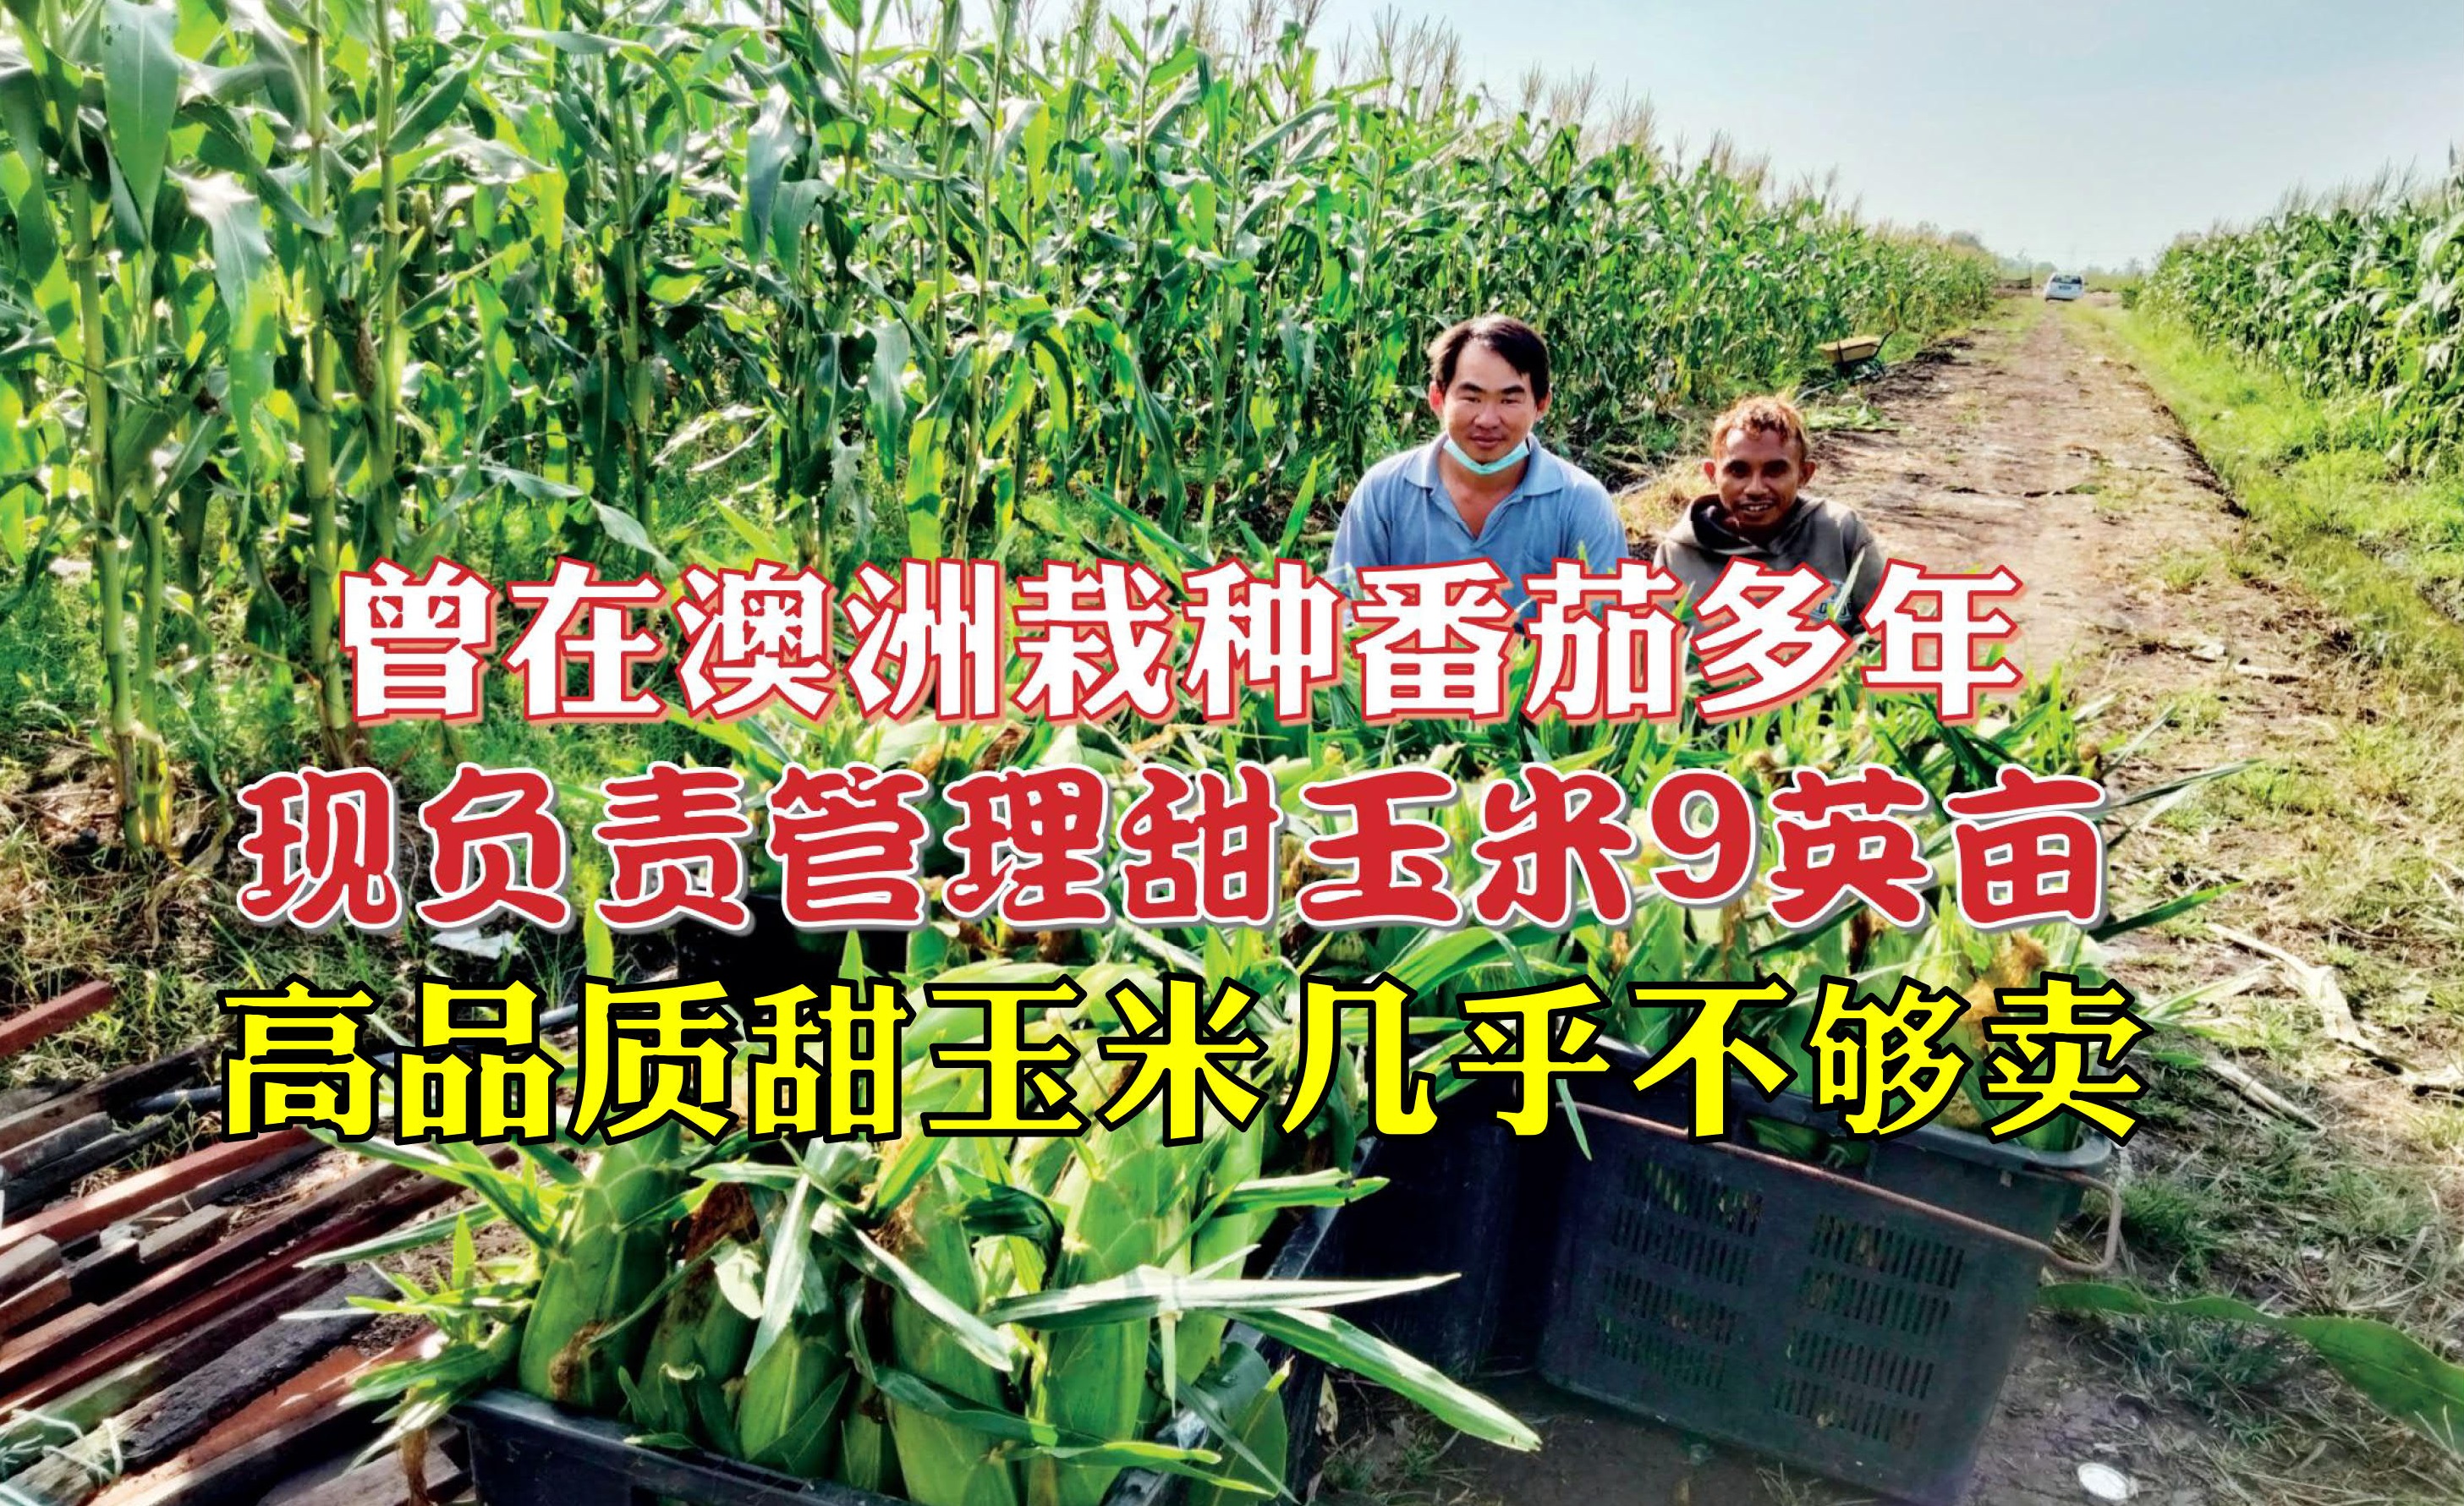 土地肥沃唯蟲害問題多 適耕莊種甜玉米有利有弊 - 农牧世界